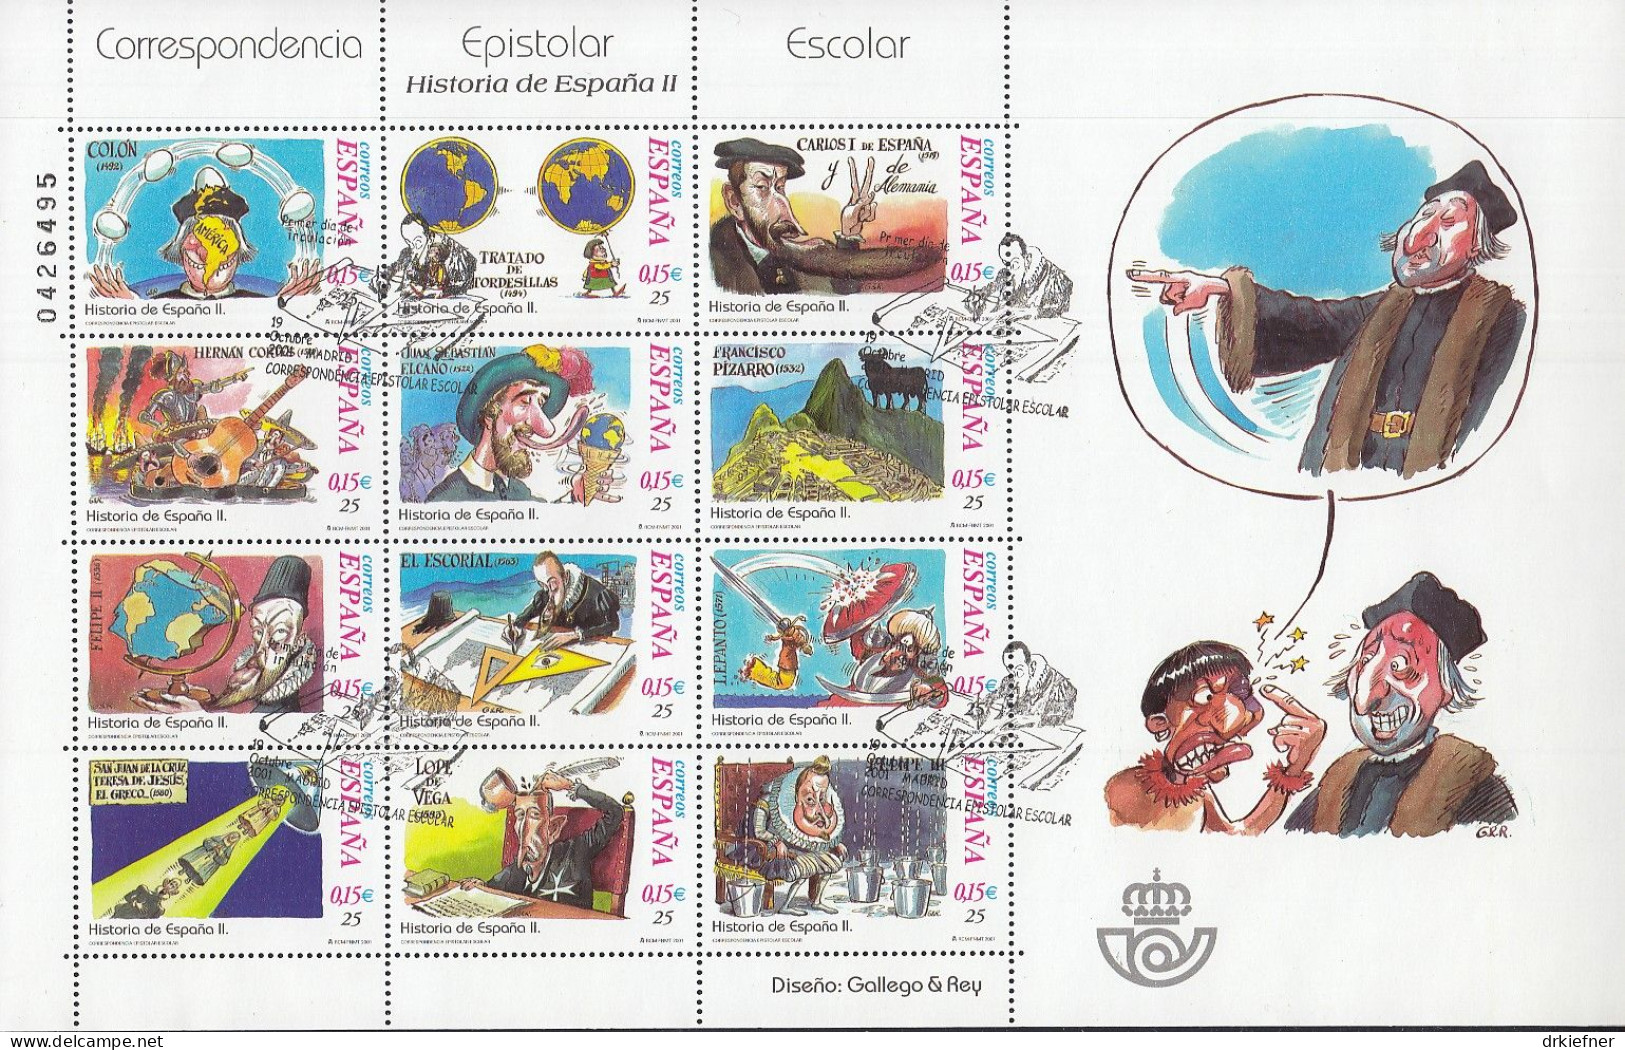 SPANIEN  3609-3612, 3618-3634, 3636, 3639-3640, 3644-3701, Gestempelt, Aus Jahrgang 2001 - Used Stamps